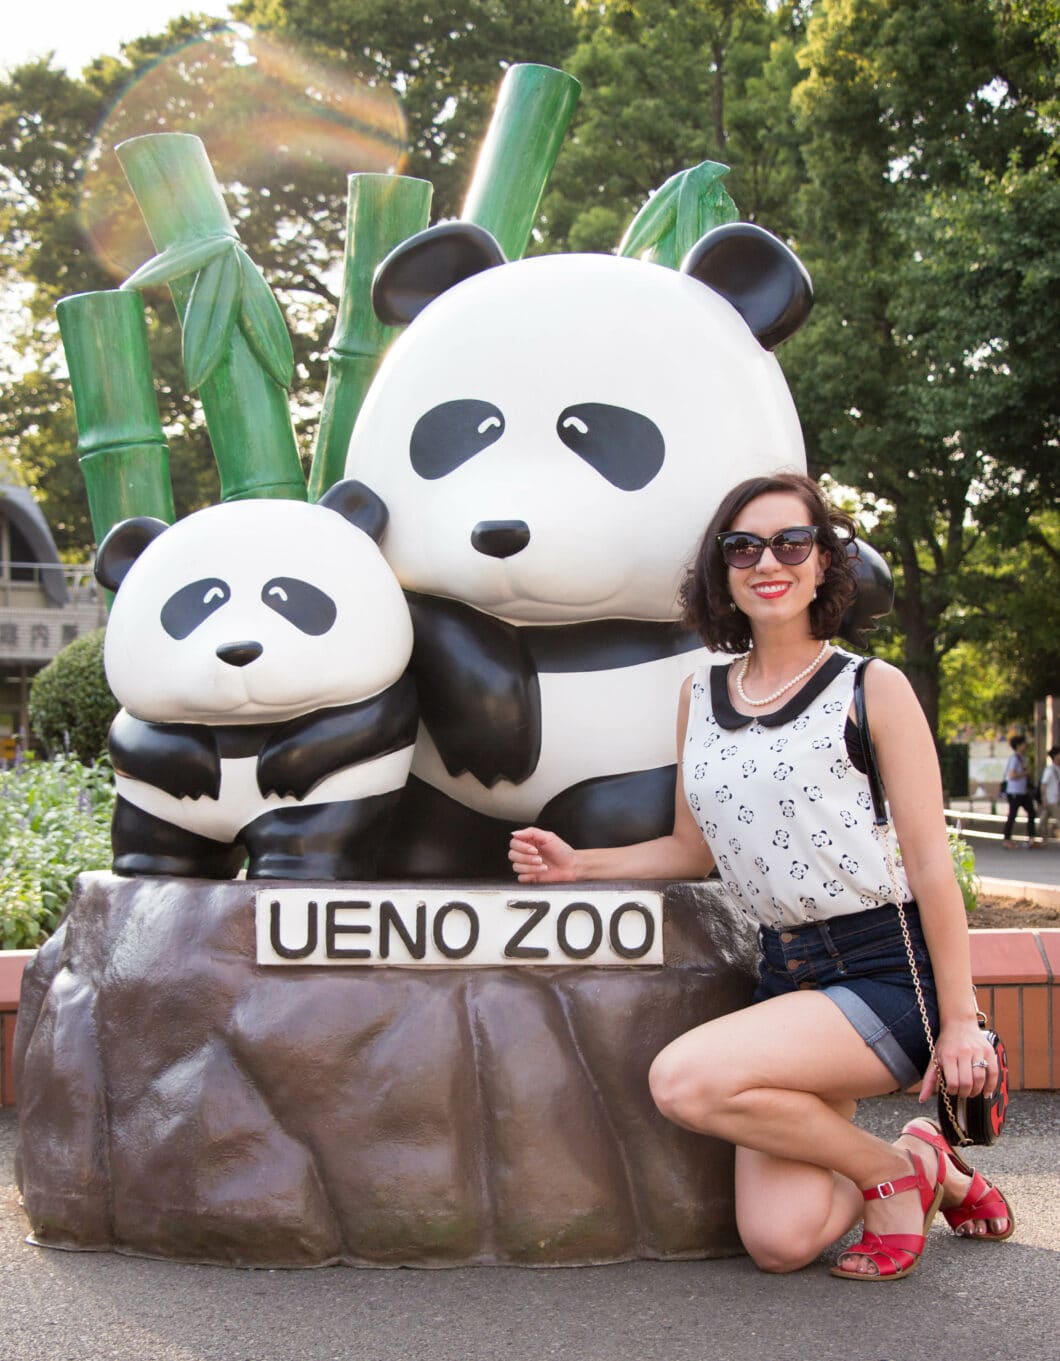 ueno zoo panda entrance